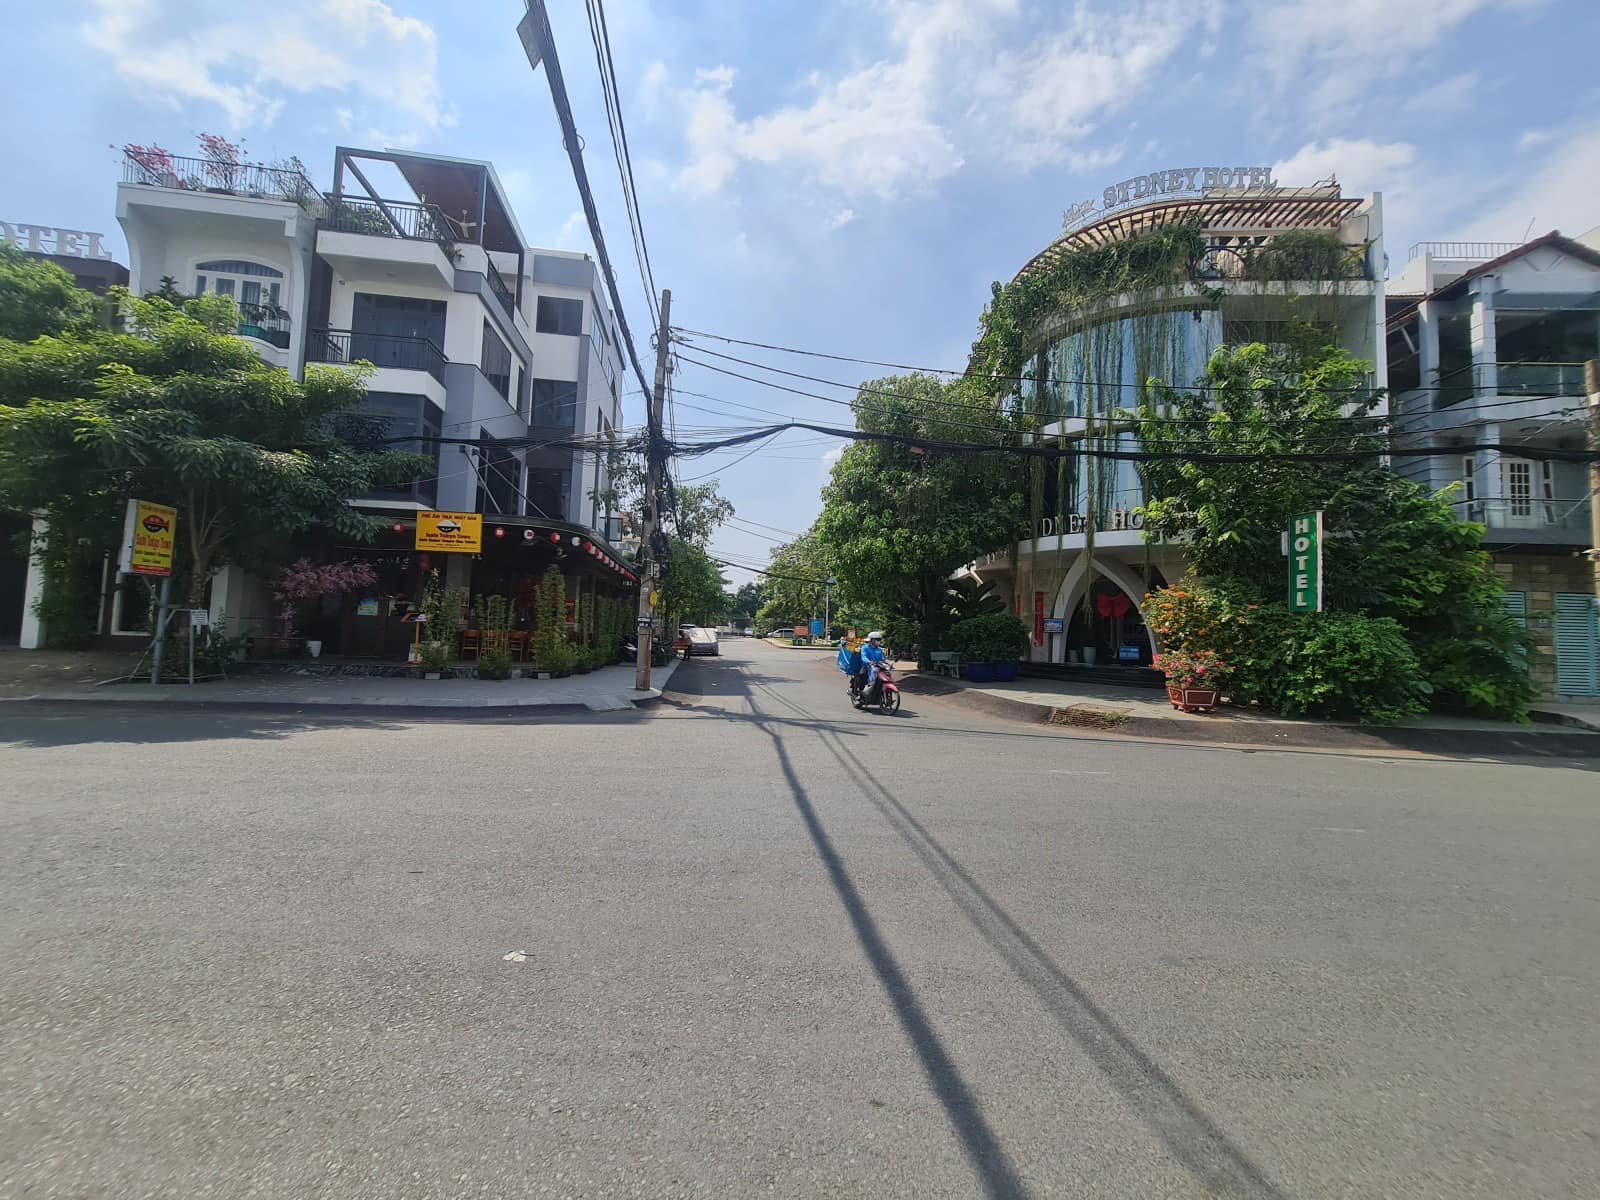 Bán biệt thự quận Thủ Đức thành phố Hồ Chí Minh, giá 29 tỷ